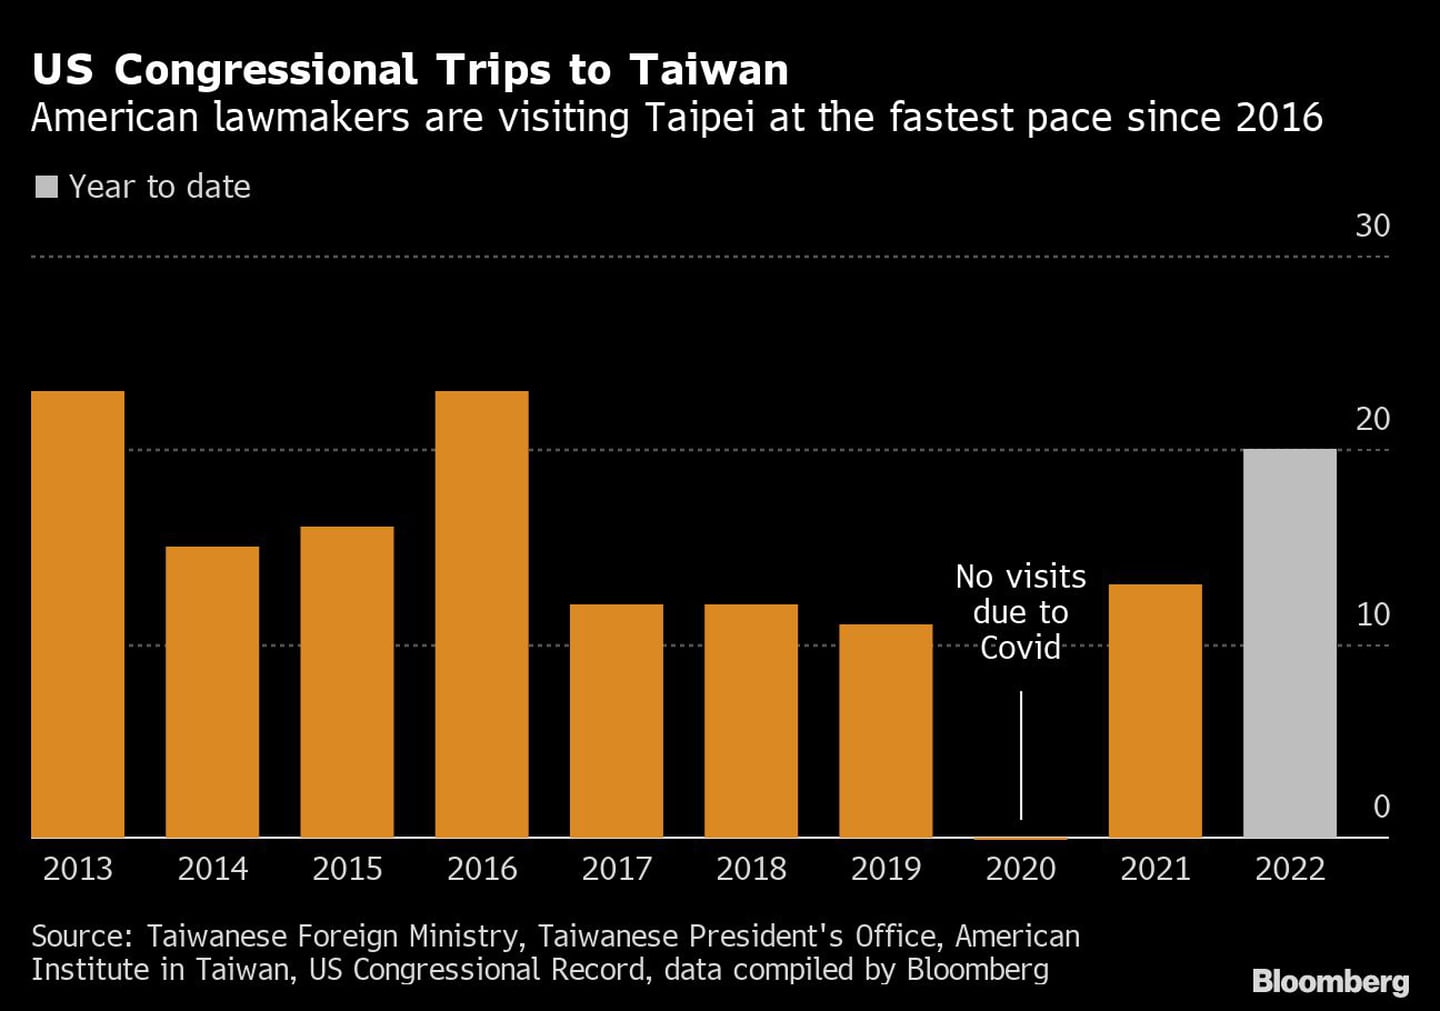 Los legisladores estadounidenses visitan Taipei al ritmo más rápido desde 2016dfd